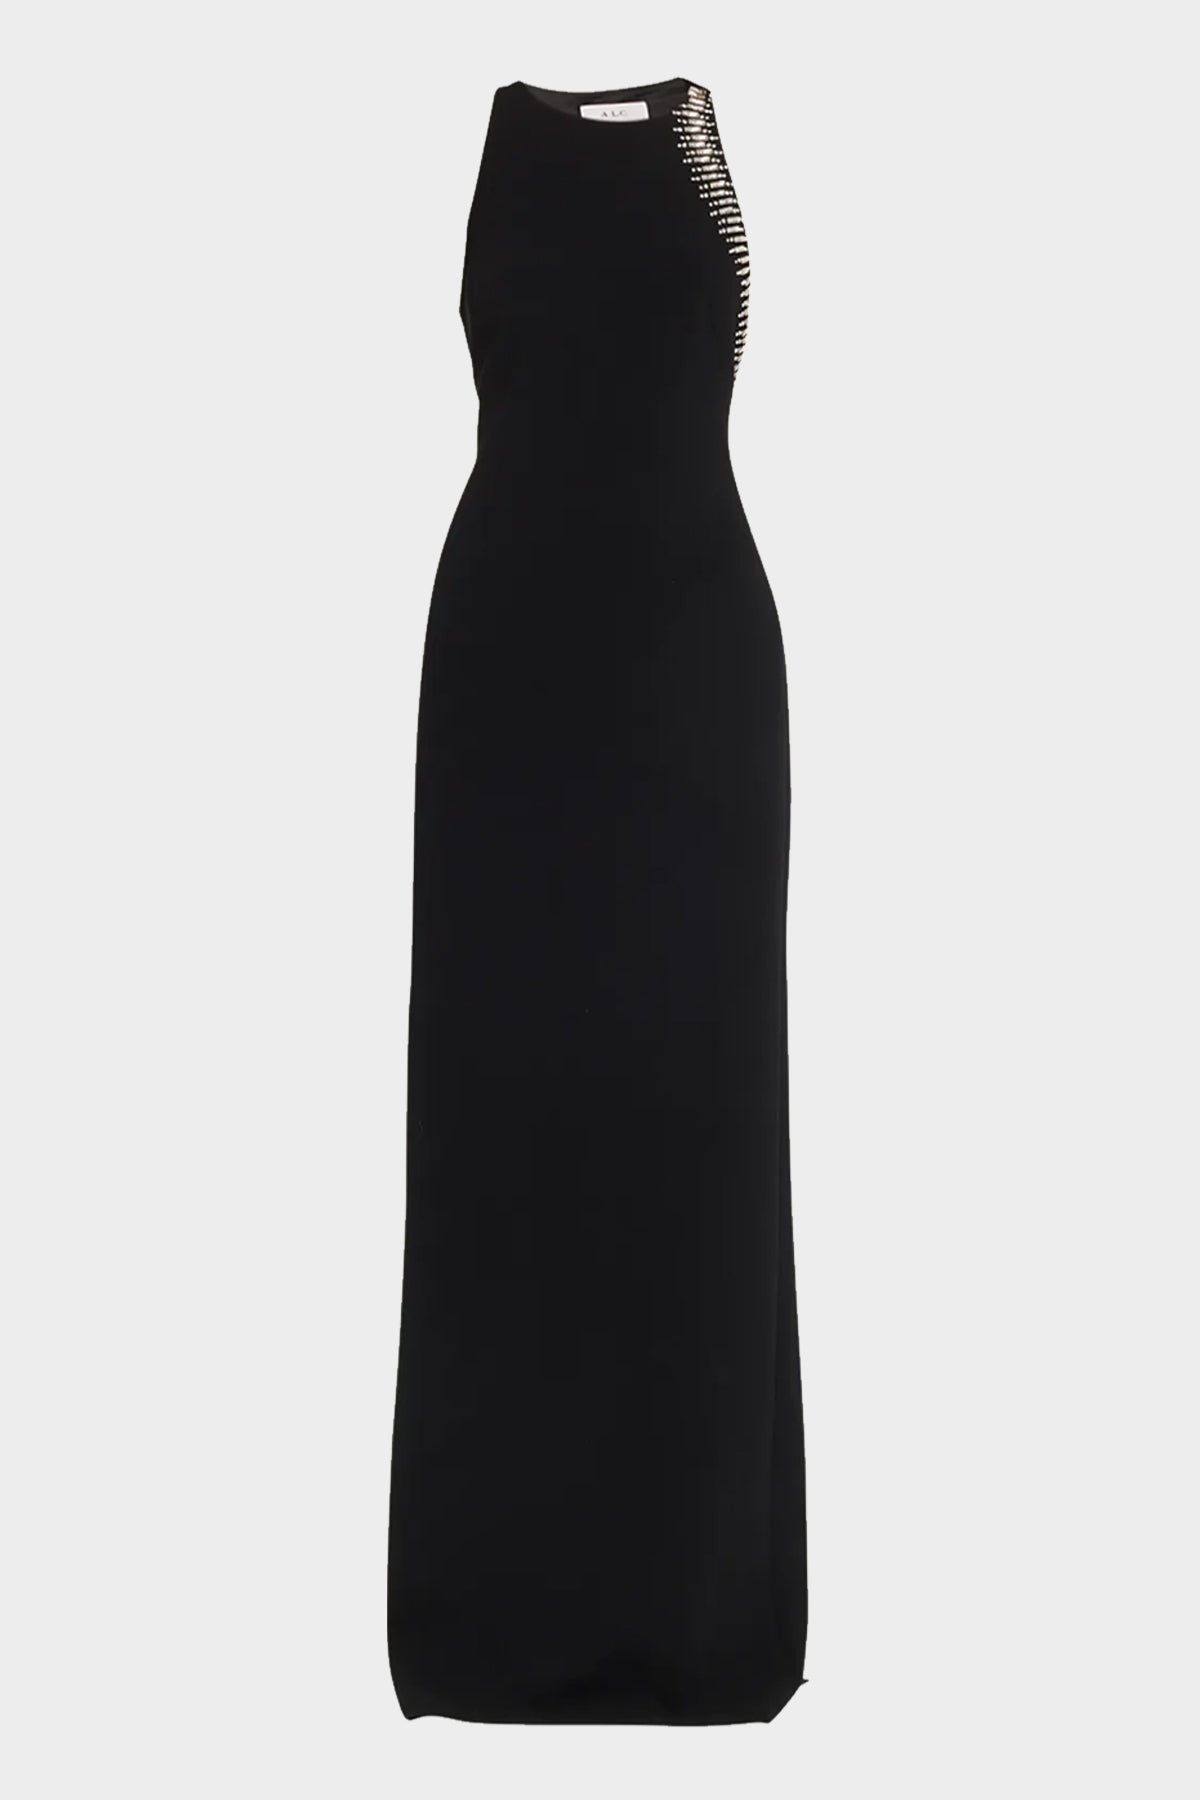 Skyler Embellished Open Back Dress in Black - shop-olivia.com